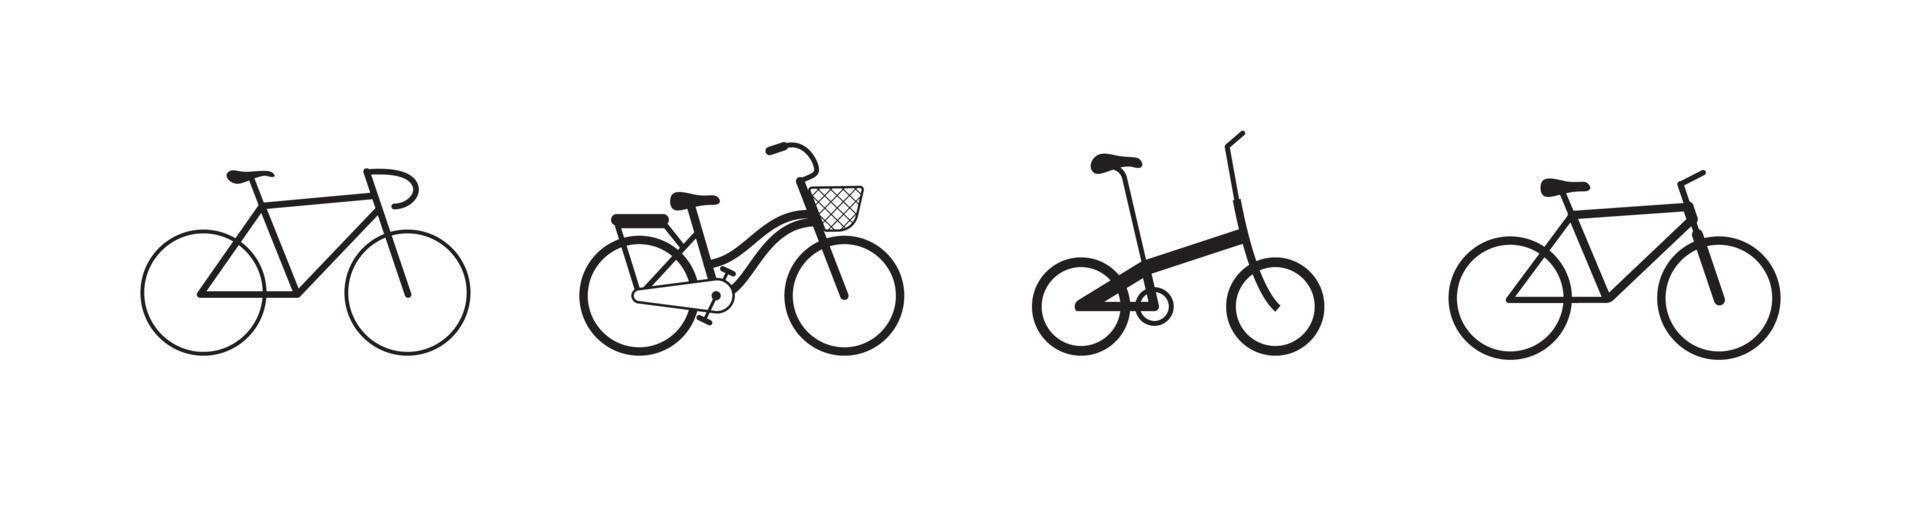 elemento de diseño de icono de bicicleta adecuado para sitios web, diseño de impresión o aplicación vector